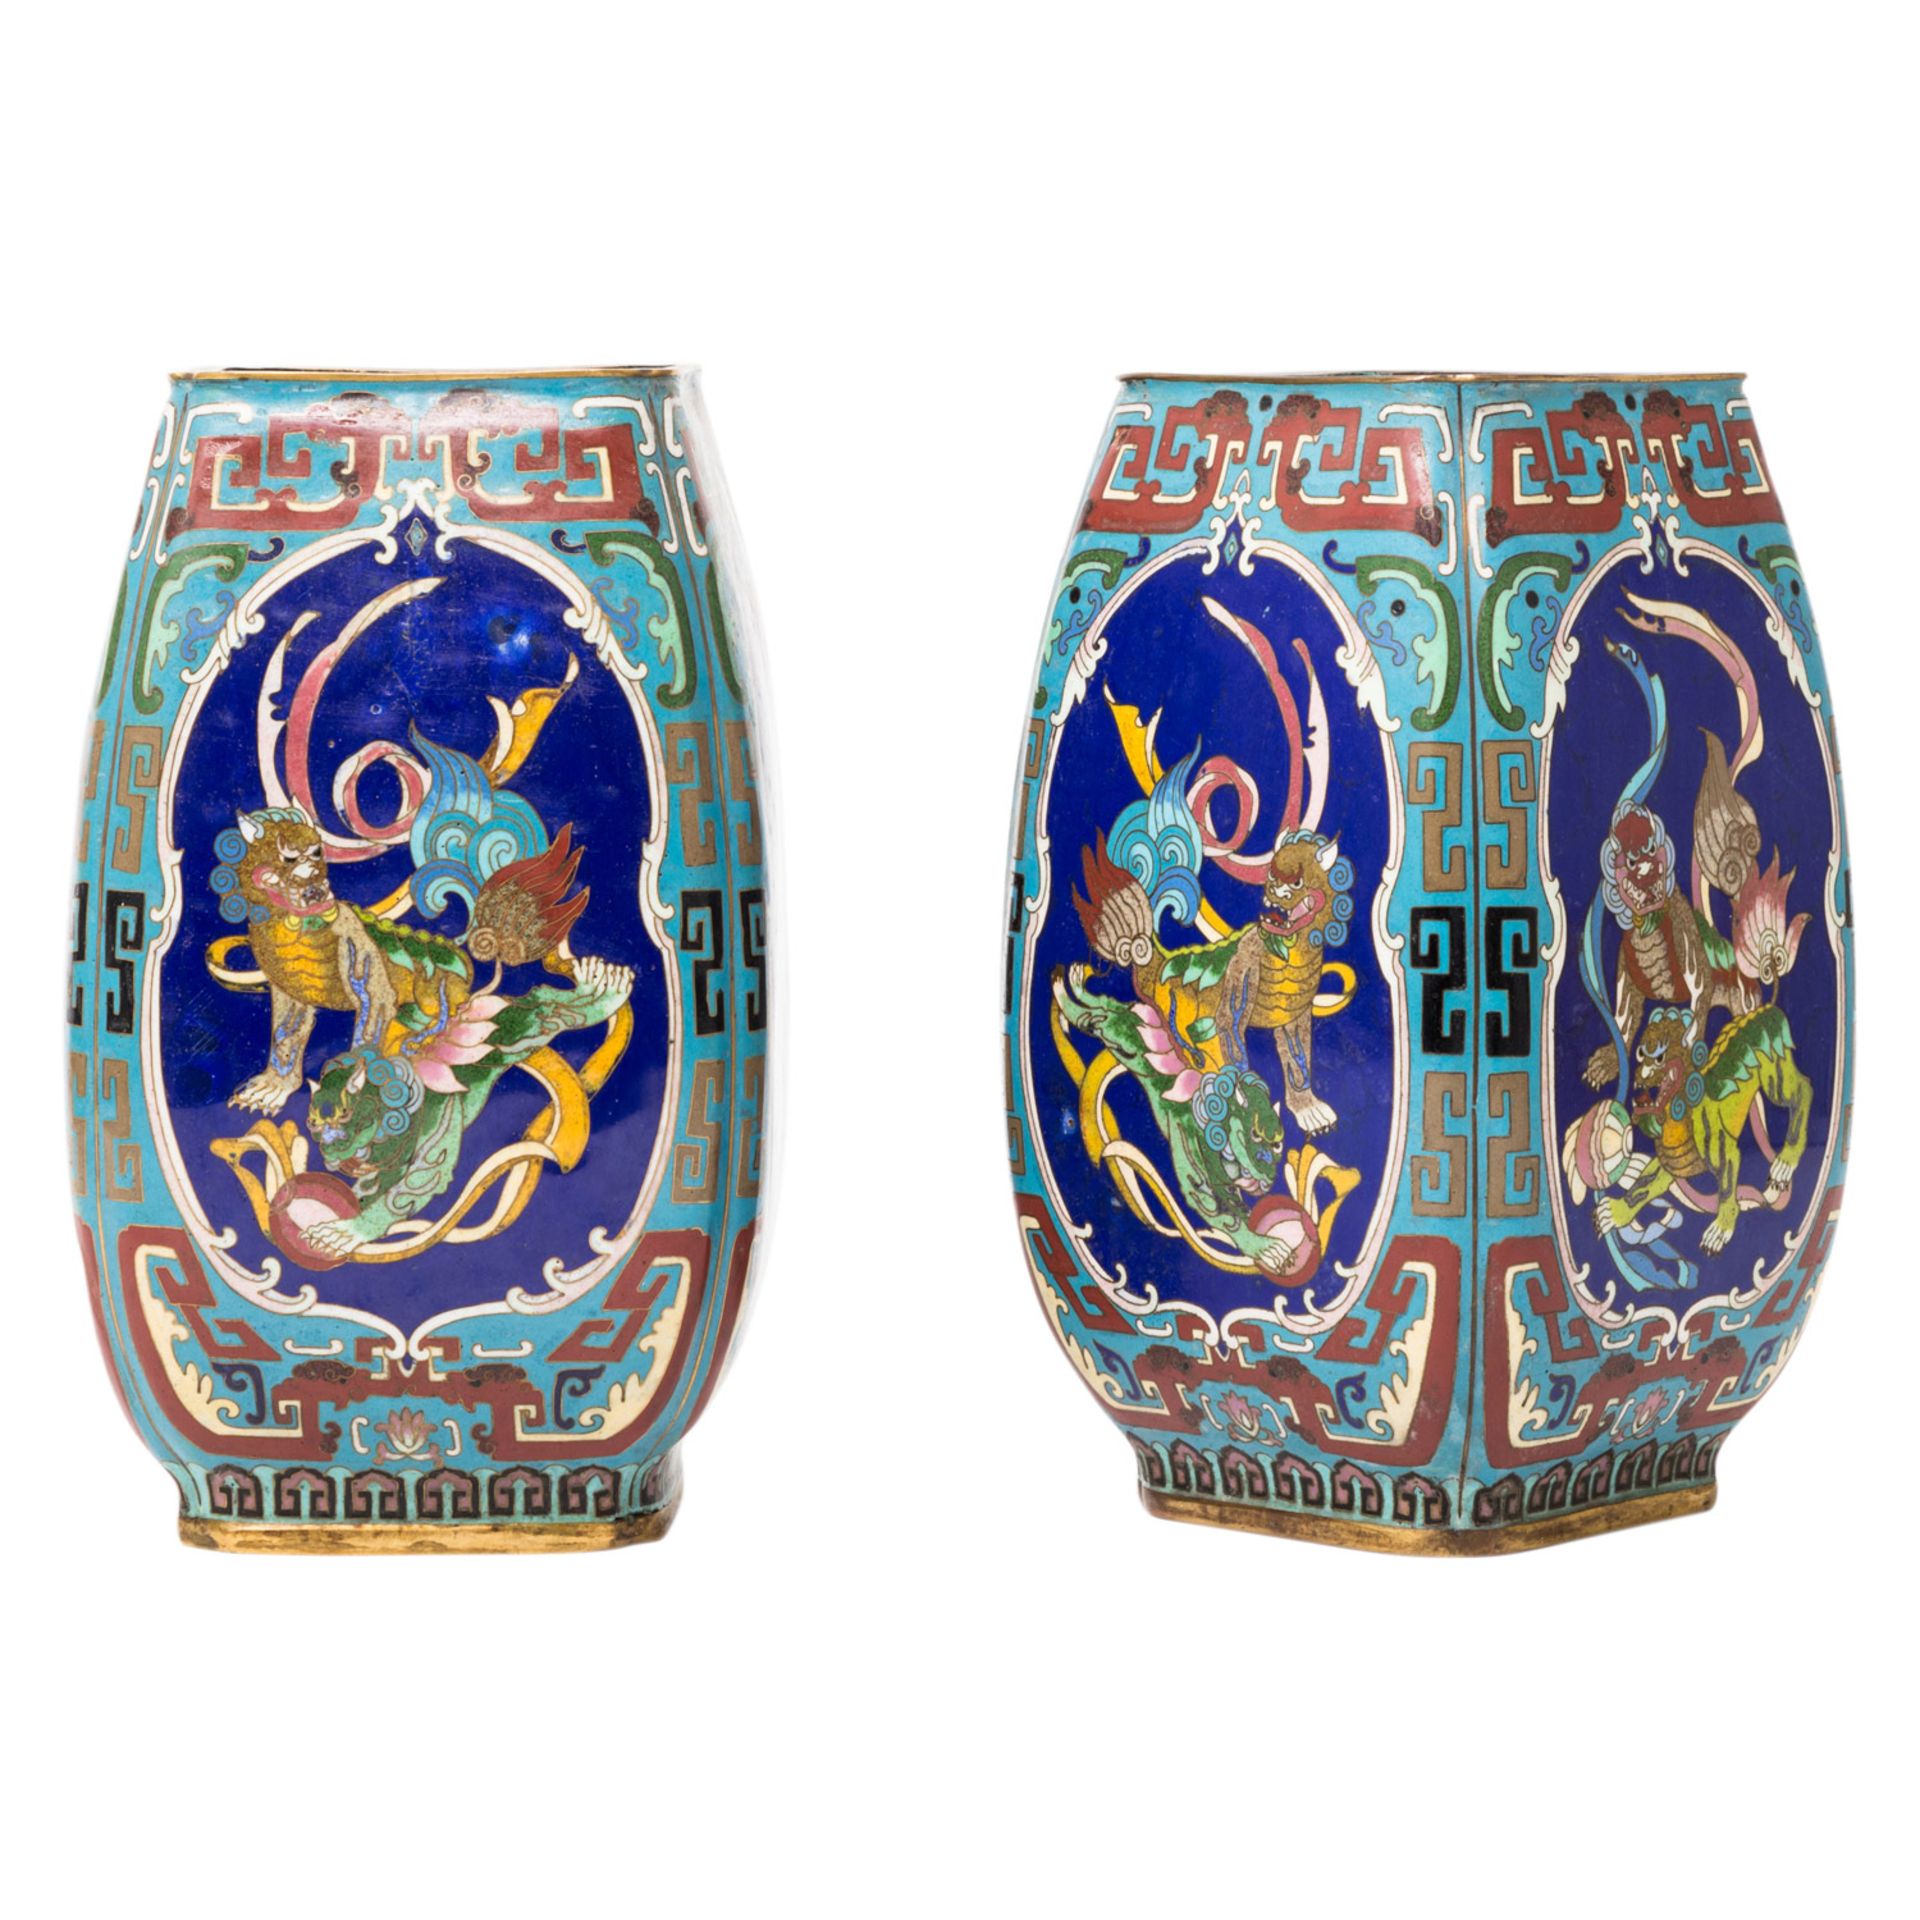 Paar exzellente Cloisonné-Vasen, CHINA, wohl 19. Jh. vierkantige, leicht gebauchte Form auf